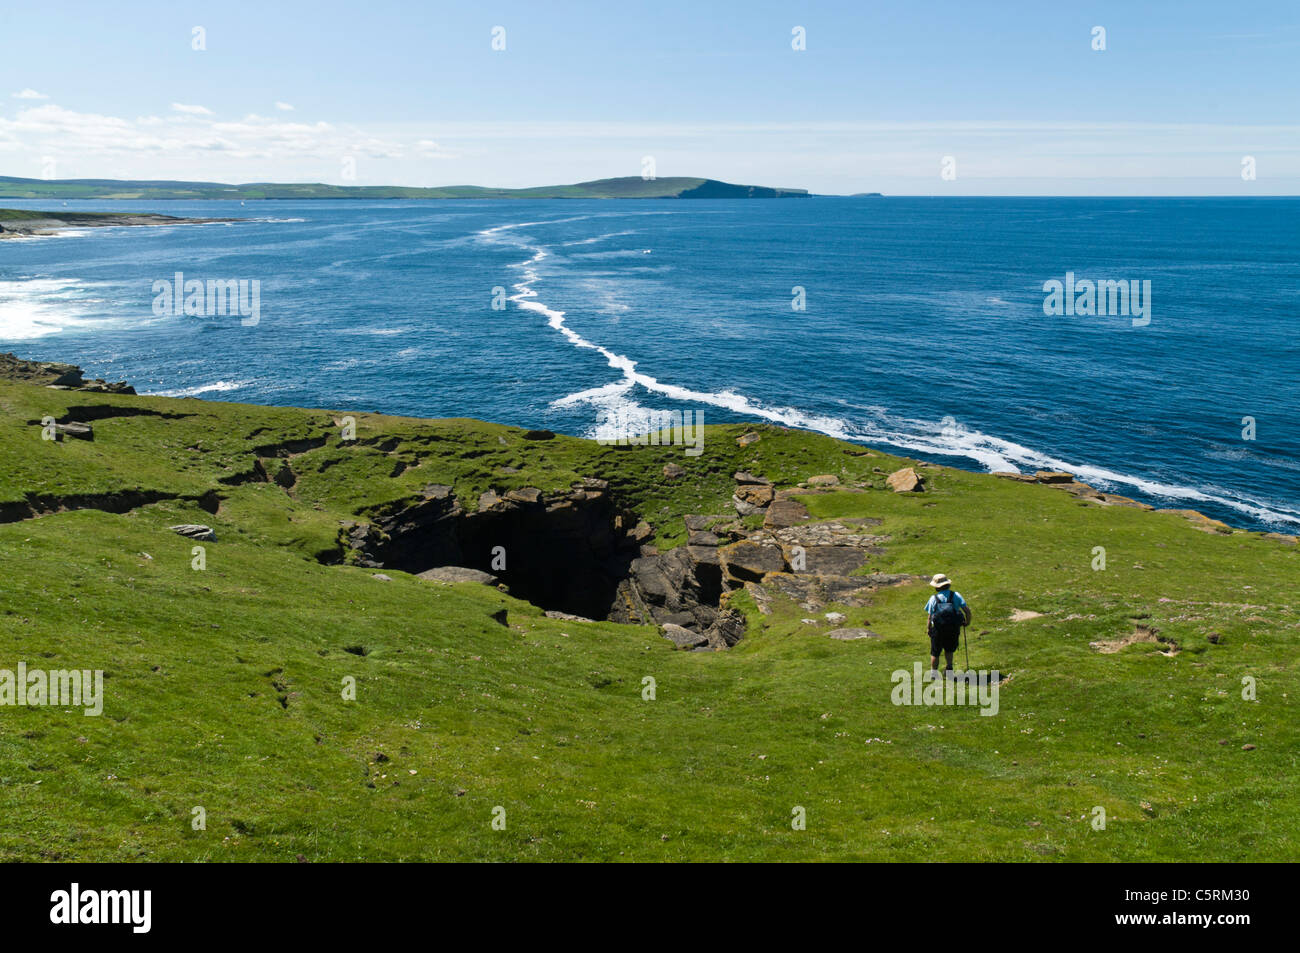 dh Scottish Coast Geo escursionista ROUSAY ISLAND ORKNEY ISLES Rousay sguardo turistico alla gente di seacliff scozia erosione mare costiero Foto Stock